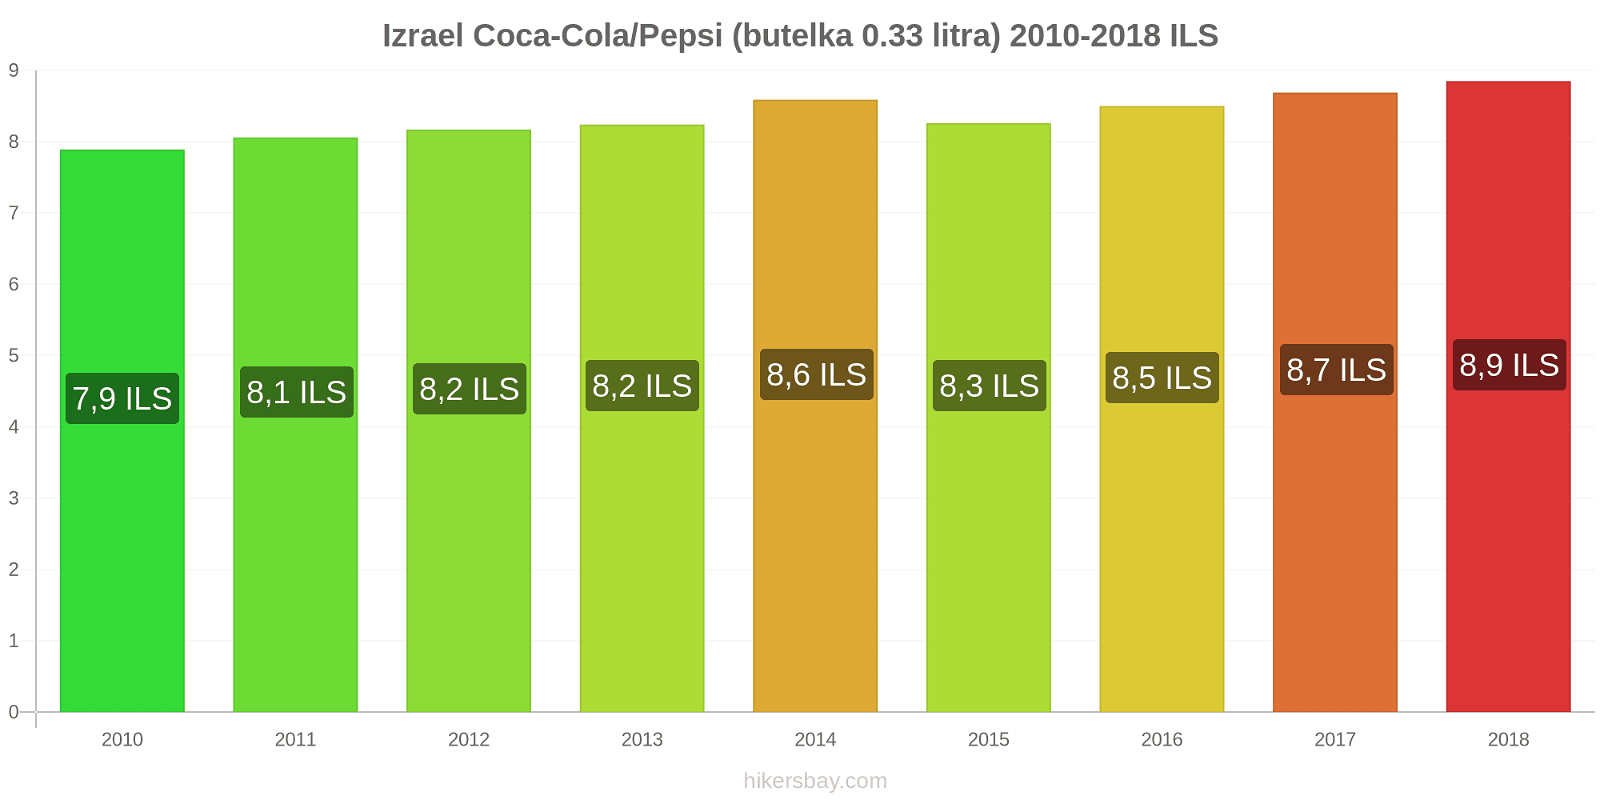 Izrael zmiany cen Coca-Cola/Pepsi (butelka 0.33 litra) hikersbay.com